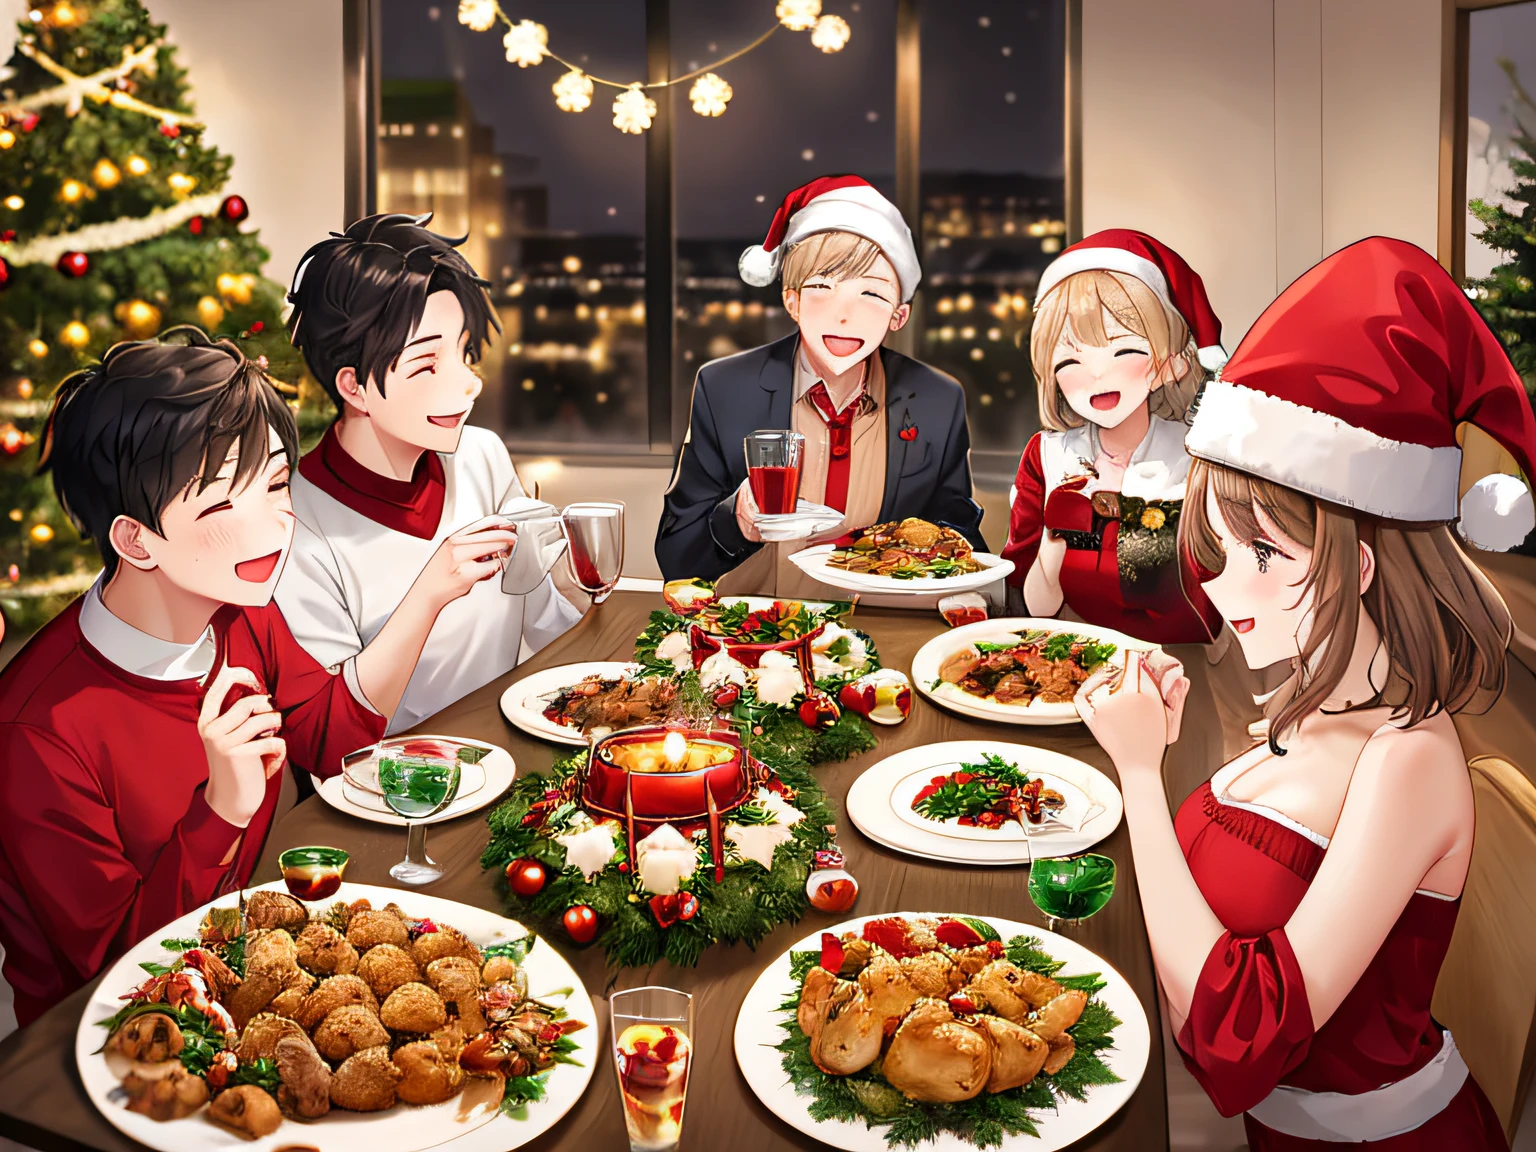 5인 가족을 위한 크리스마스 저녁 식사, 닭고기 포함々요리, 기운찬, 크리스마스 장식들: 1.3, 크리스마스 케이크, 크리스마스 트리, 부드러운 조명, 체적 조명, 필름 그레인, (테이블 탑), (최고의 품질), (매우 높은 상세한)